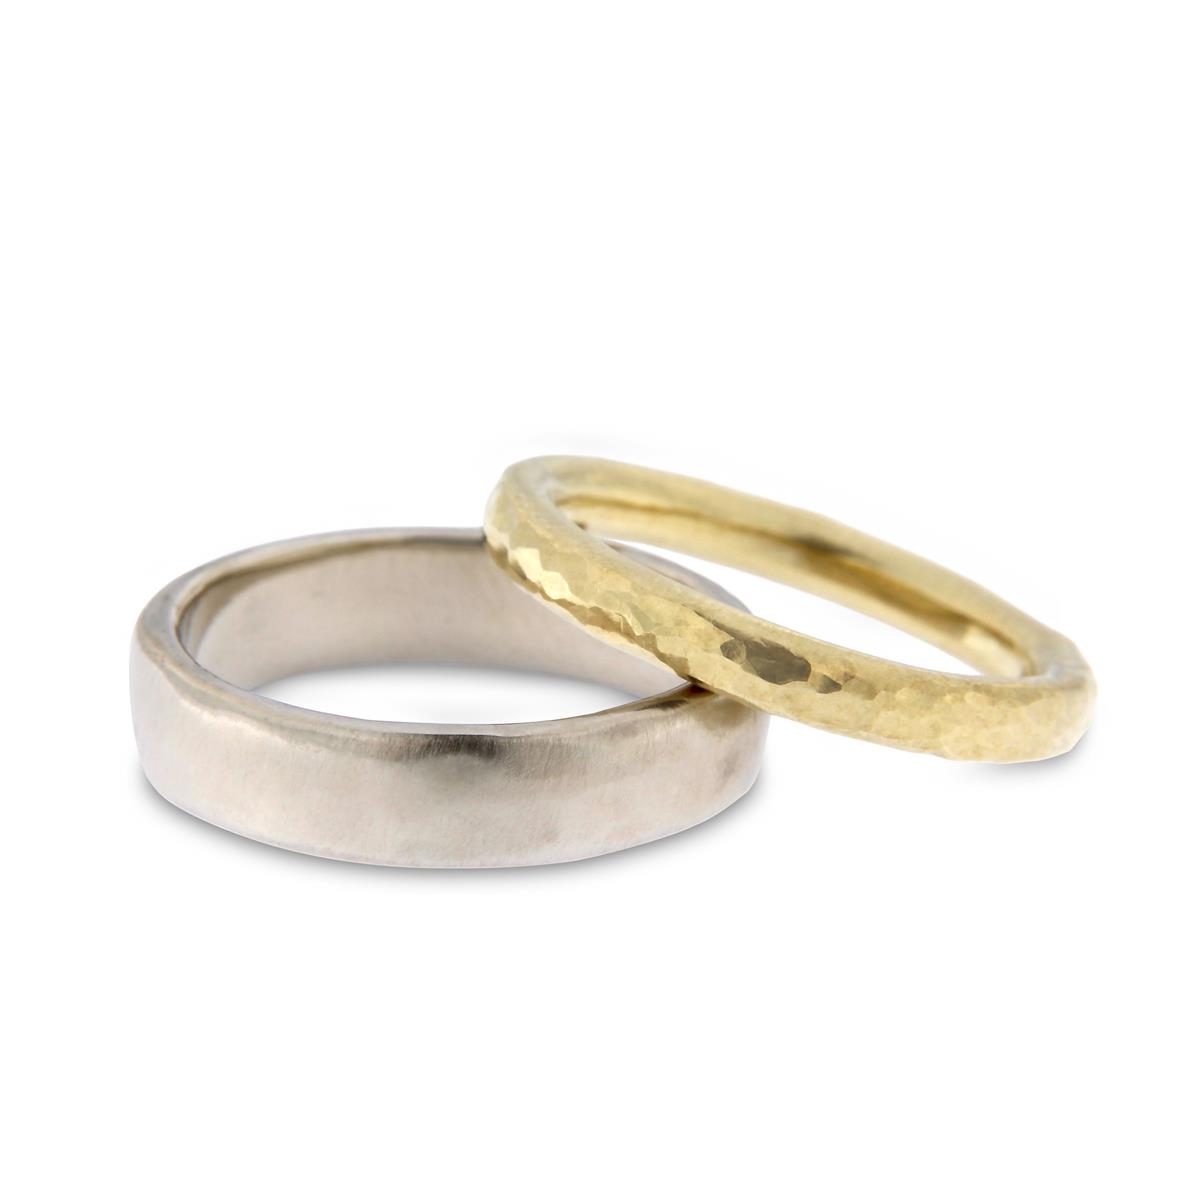 Katie g. Jewellery – Wedding - Männerring natürliches Weißgold und Damenring gehämmertes Gelbgold